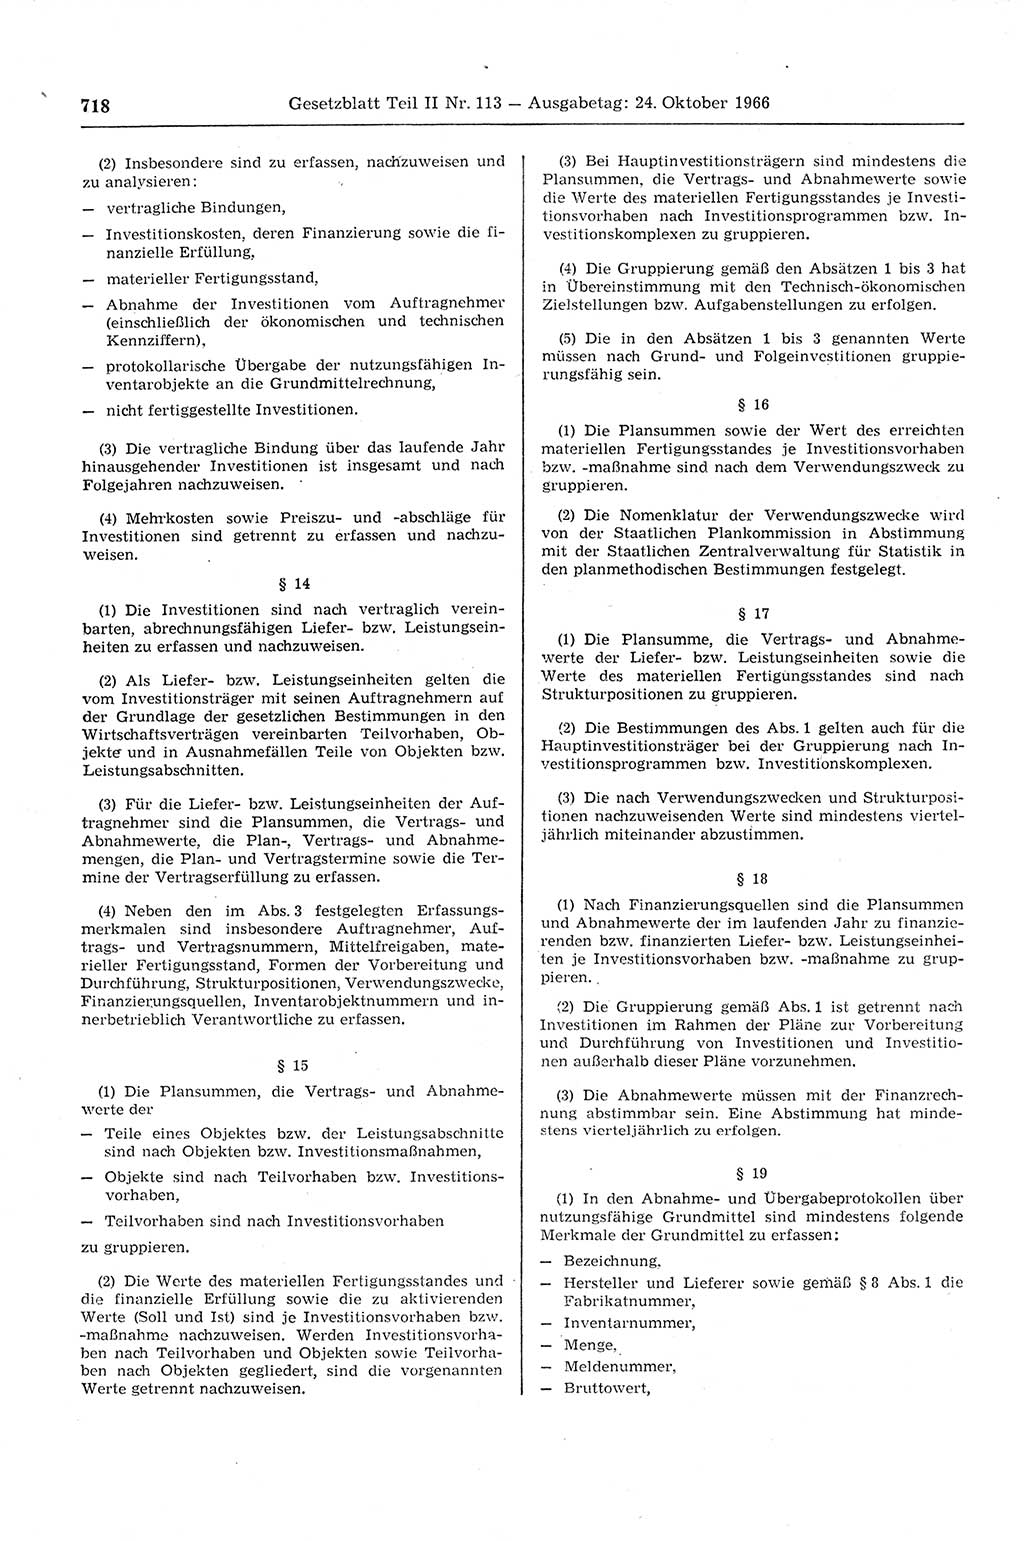 Gesetzblatt (GBl.) der Deutschen Demokratischen Republik (DDR) Teil ⅠⅠ 1966, Seite 718 (GBl. DDR ⅠⅠ 1966, S. 718)